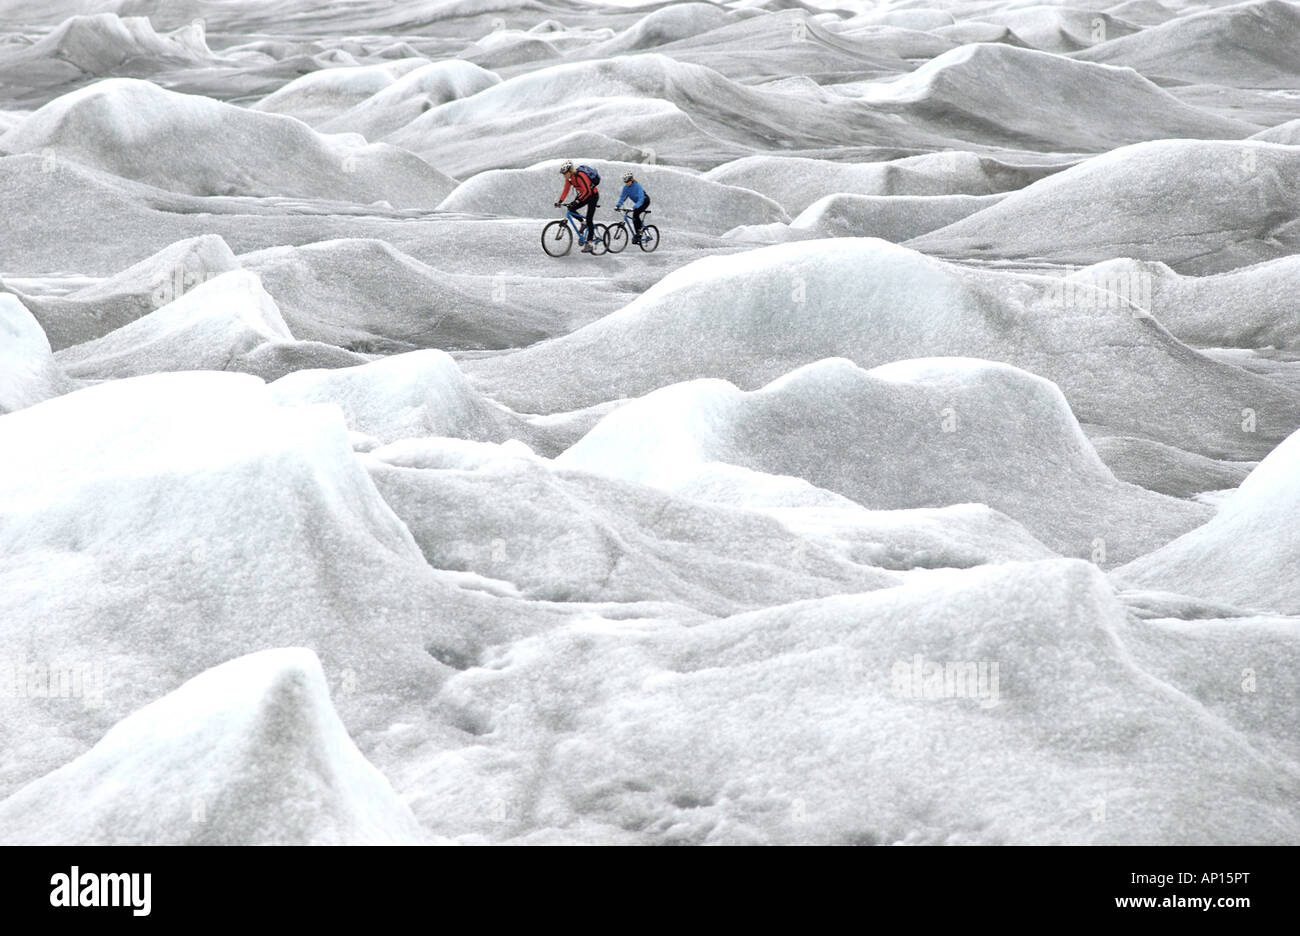 Zwei Personen Mountainbiking über Inlandeis, Ilulissat, Inland Eis Kangerlussuaq, Grönland Stockfoto